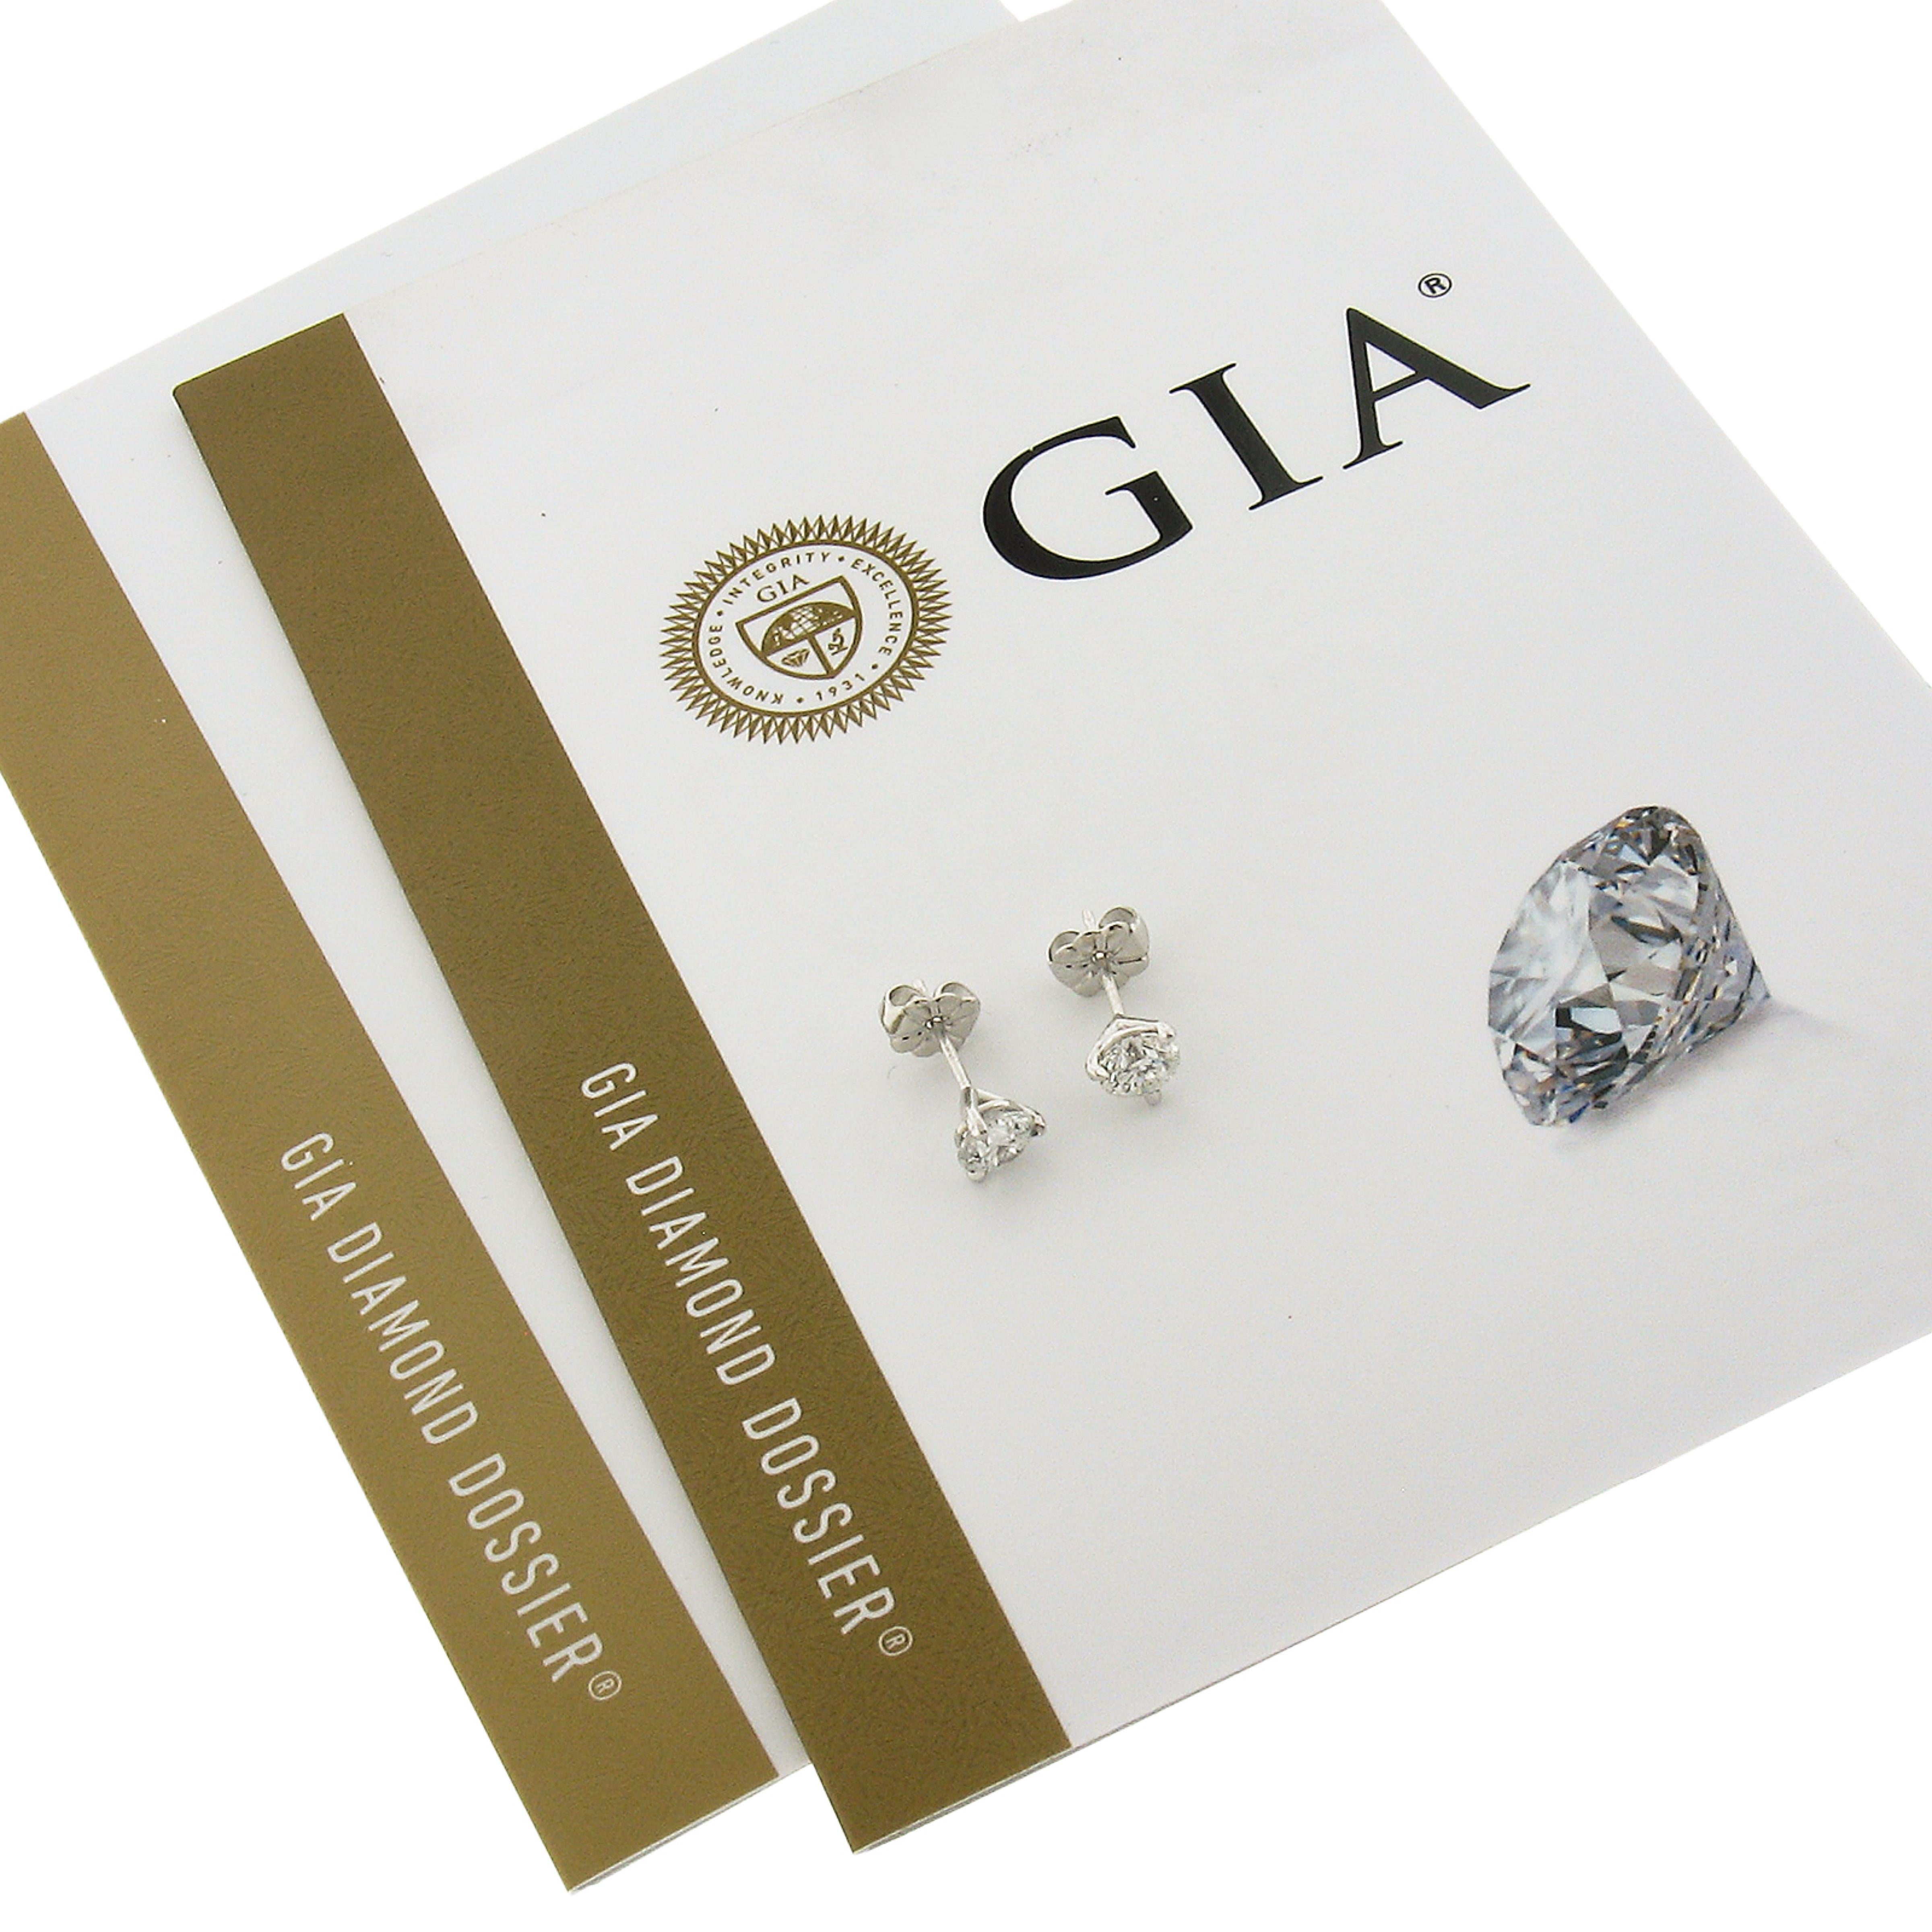 Dieses elegante Paar Diamantohrstecker wurde neu aus massivem Platin gefertigt und verfügt über zwei brillante und feurige, GIA-zertifizierte, runde Martini-Diamanten in Zackenfassung. Diese sehr feinen Qualitätsdiamanten haben ein Gesamtgewicht von